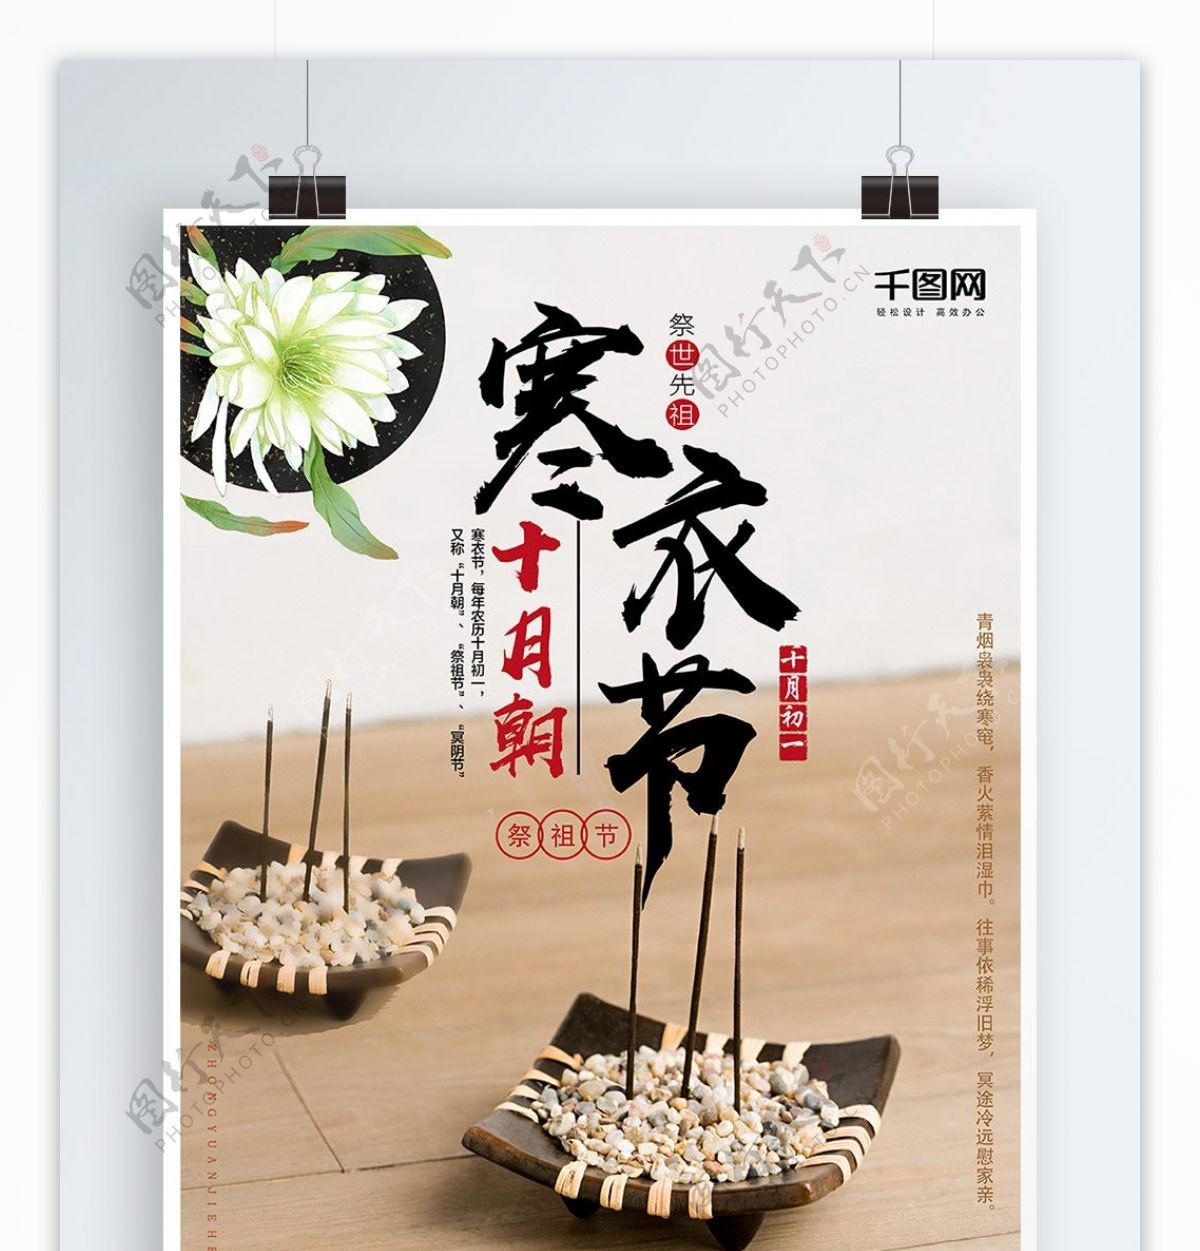 中国传统节日寒衣节海报设计